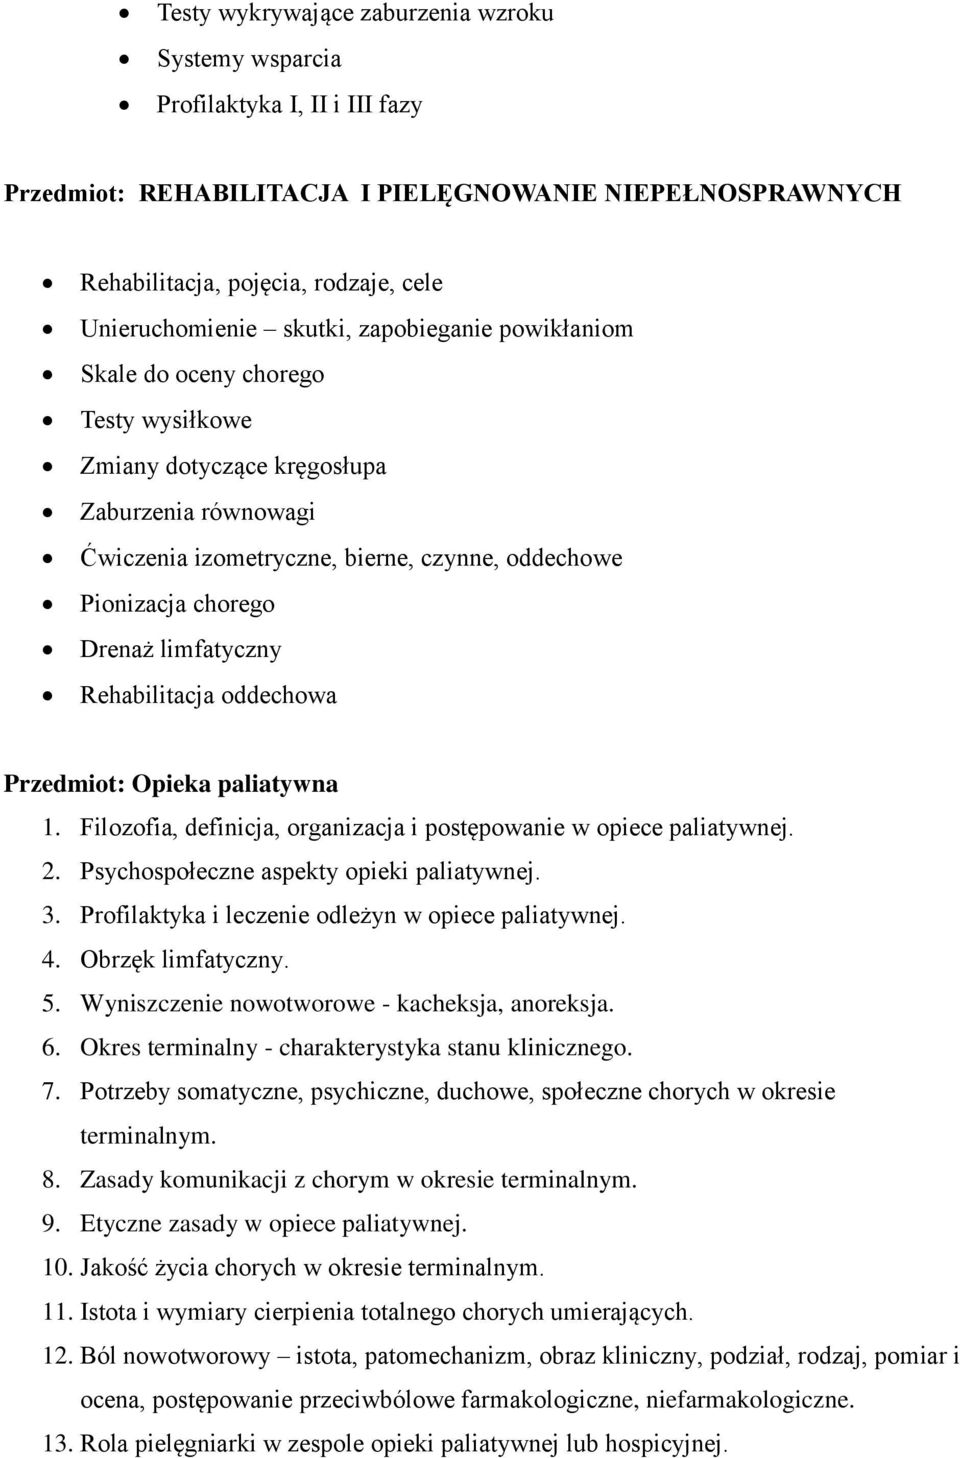 limfatyczny Rehabilitacja oddechowa Przedmiot: Opieka paliatywna 1. Filozofia, definicja, organizacja i postępowanie w opiece paliatywnej. 2. Psychospołeczne aspekty opieki paliatywnej. 3.